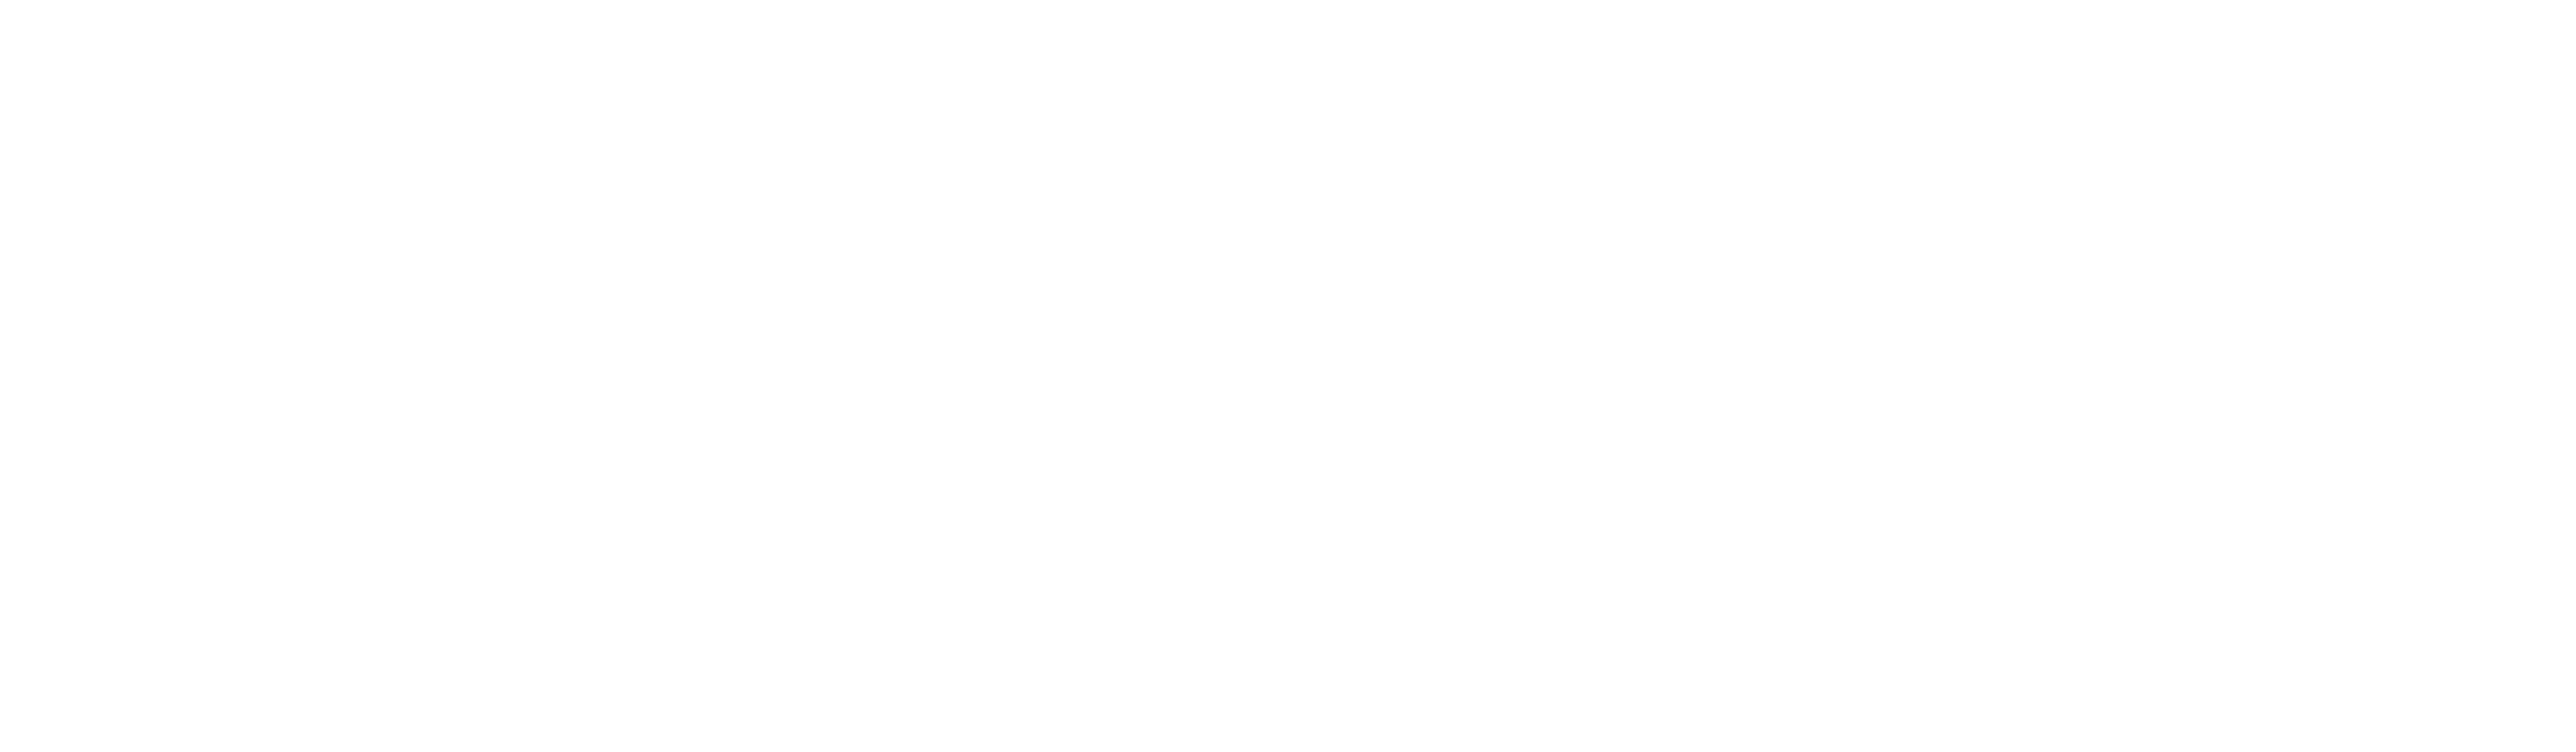 Couto Coffee - Muito Mais Que Café Espresso